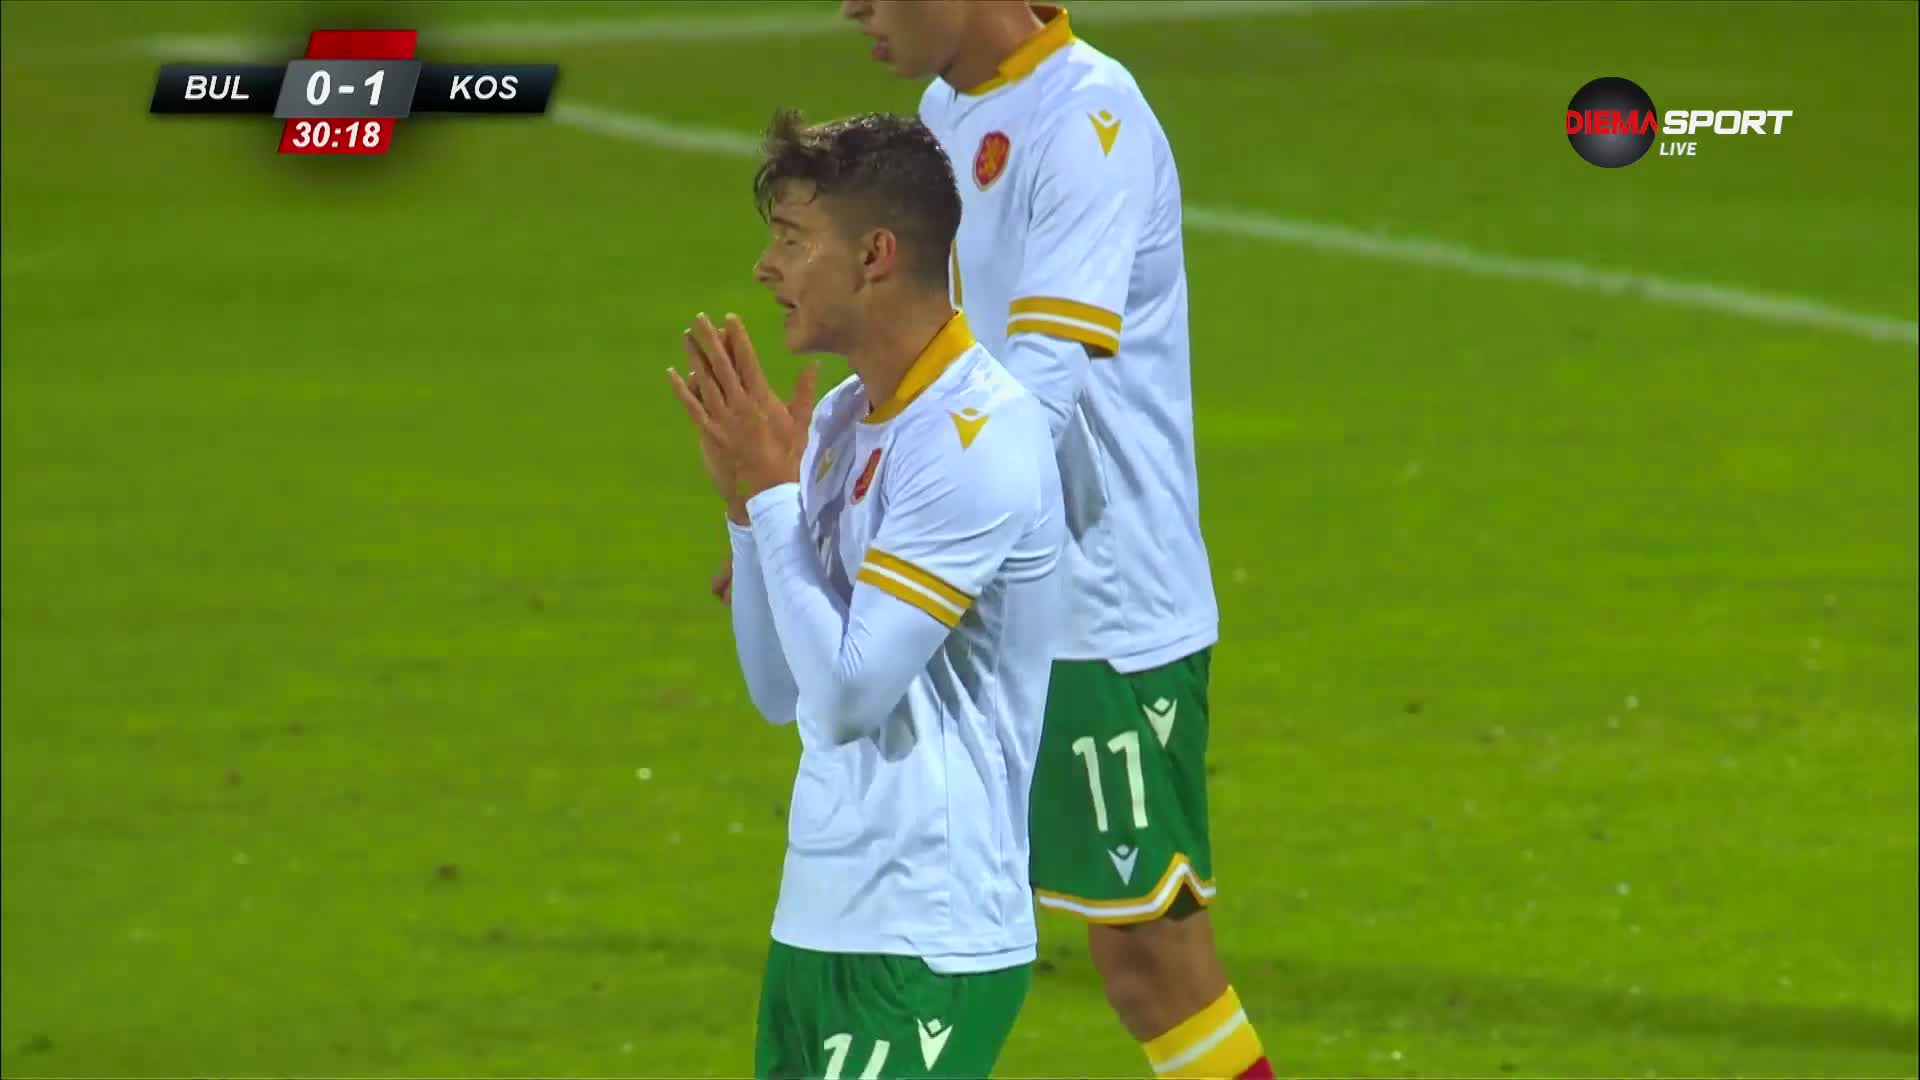 България - Косово 0:1 /първо полувреме/